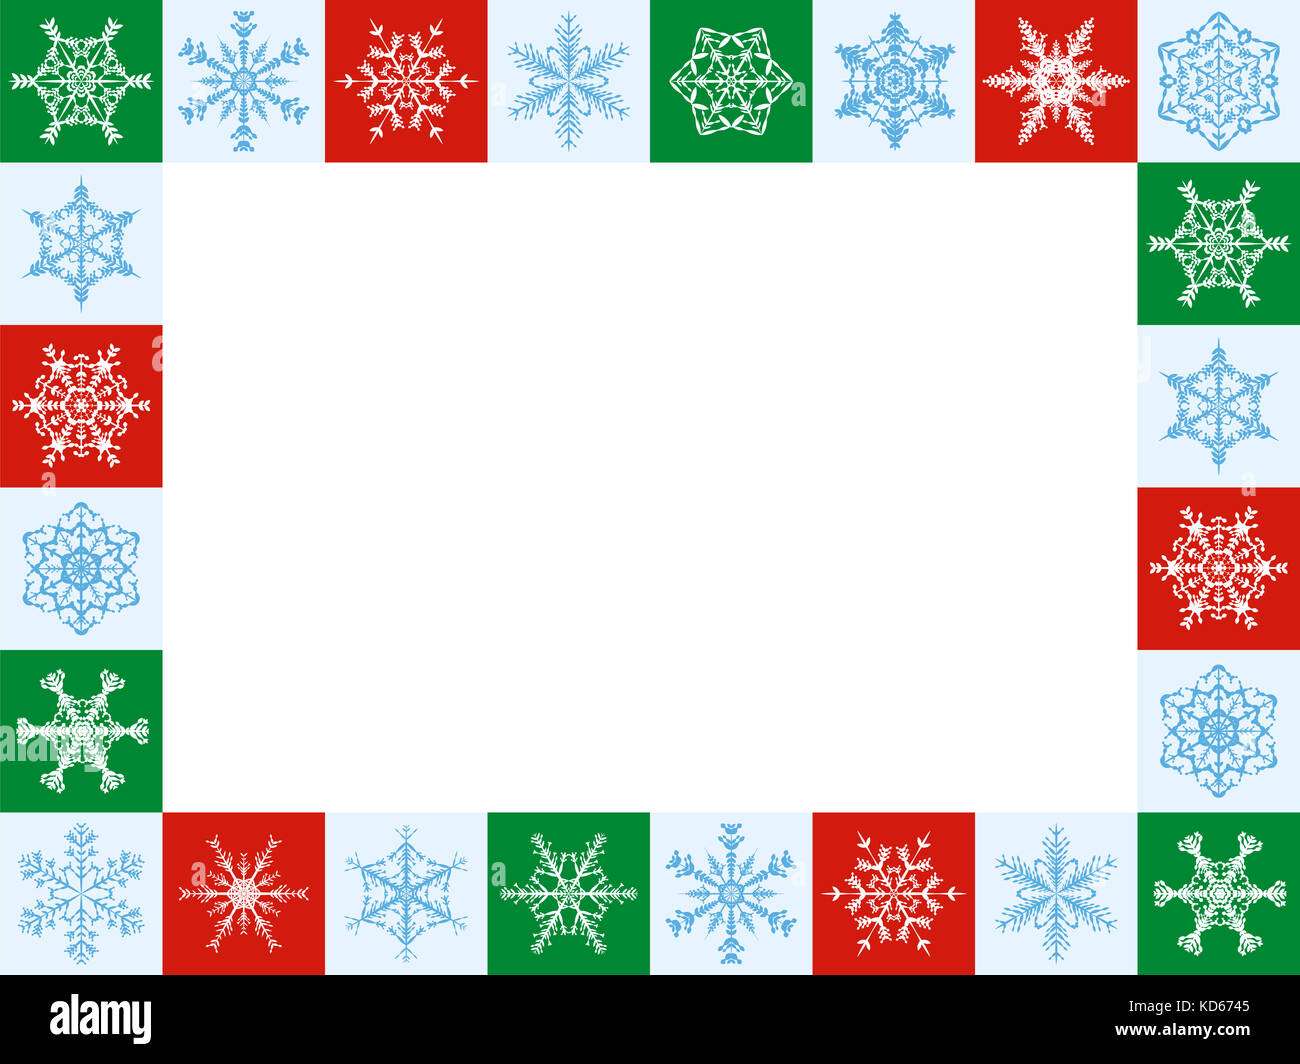 Los copos de nieve Christmas Frame, formato horizontal - veinticuatro artful rojo, verde y baldosas blancas - Ilustración con centro blanco blanco. Foto de stock